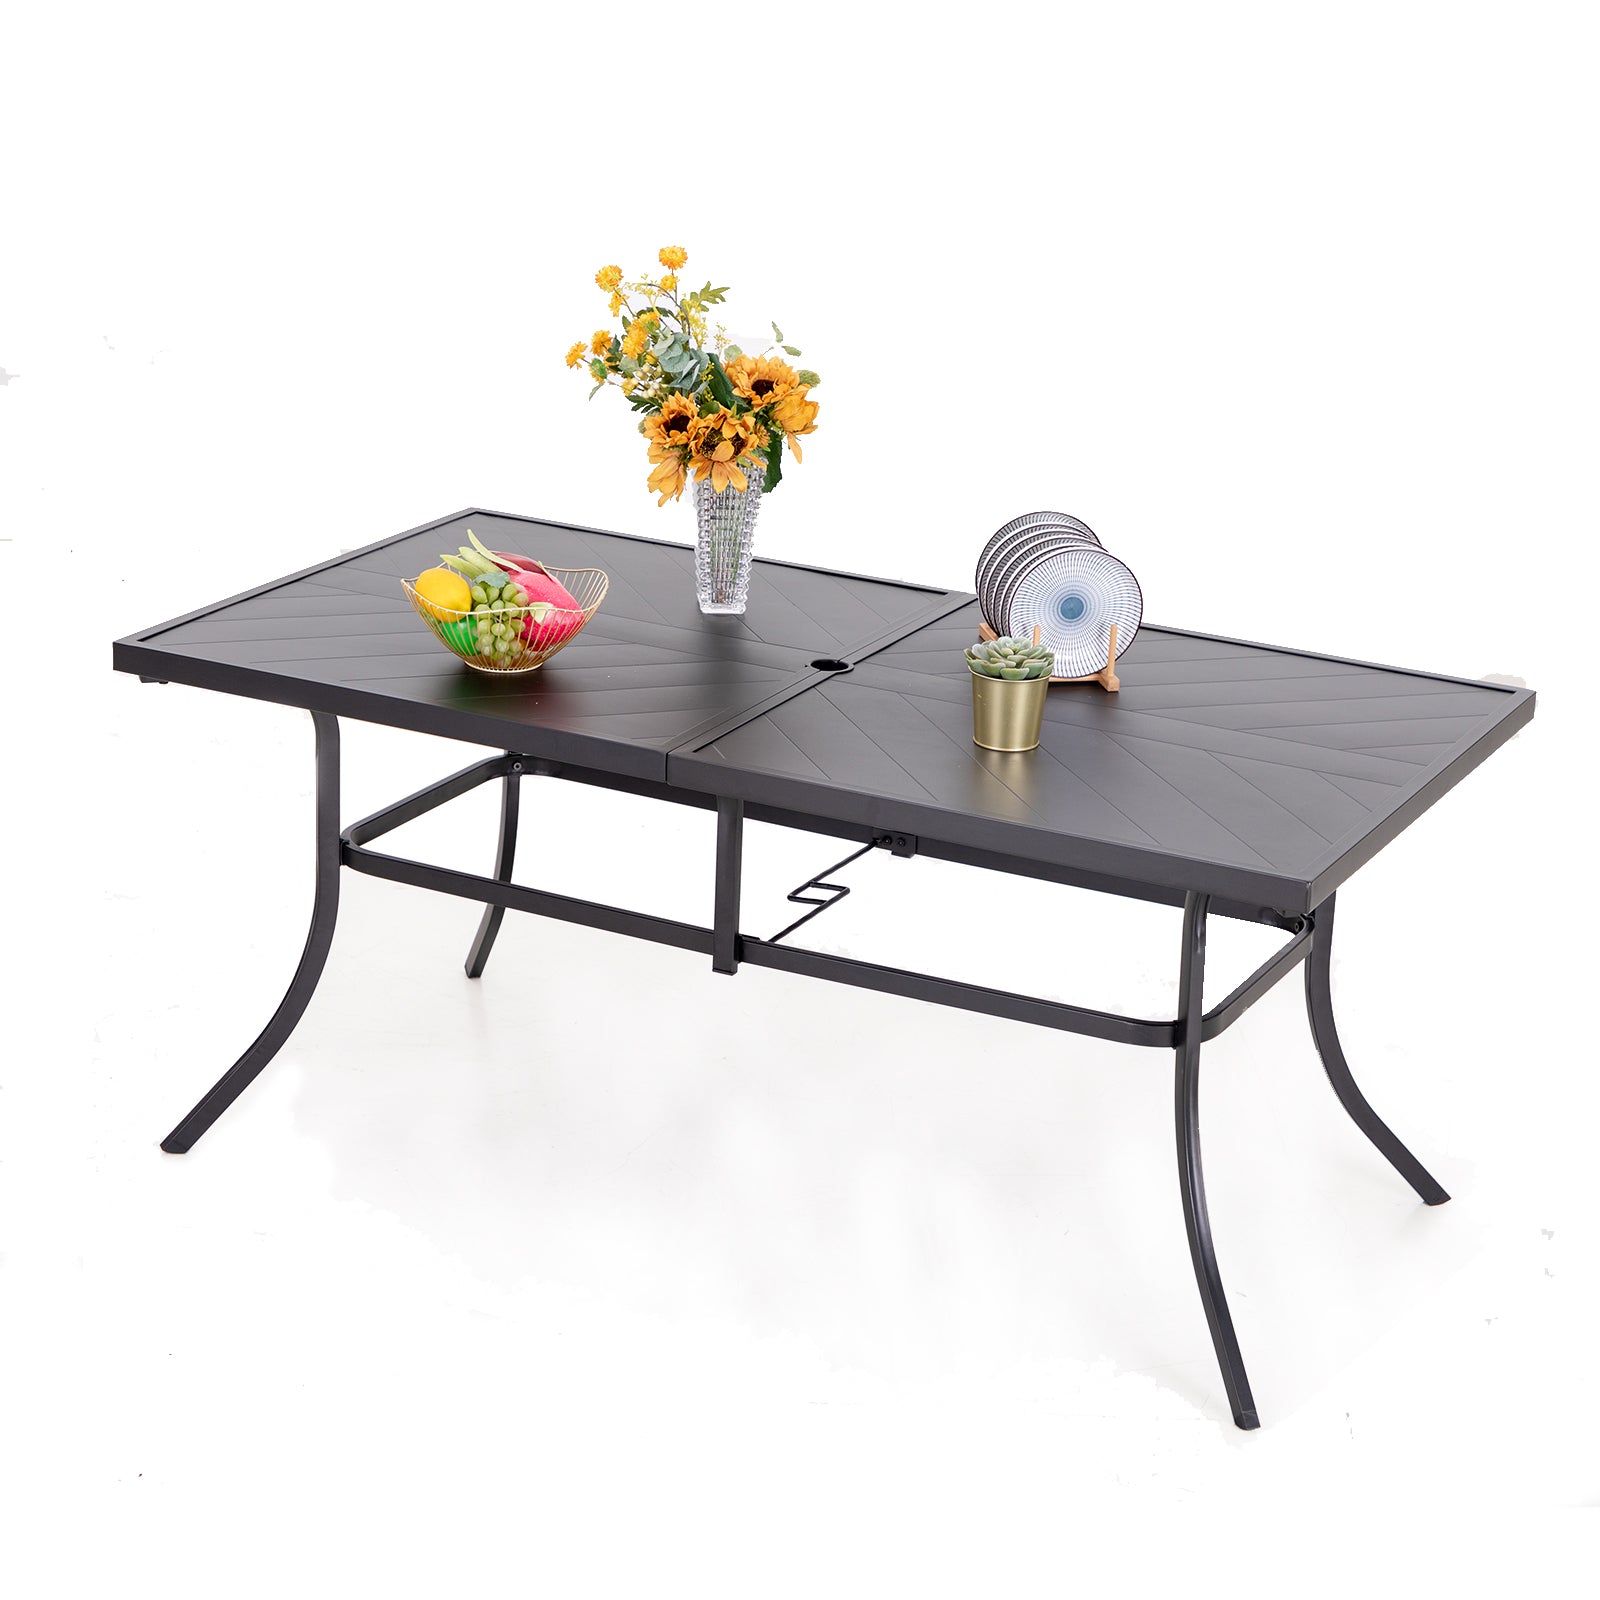 Sophia & William 65" x 35" Embossed Steel Rectangle Table